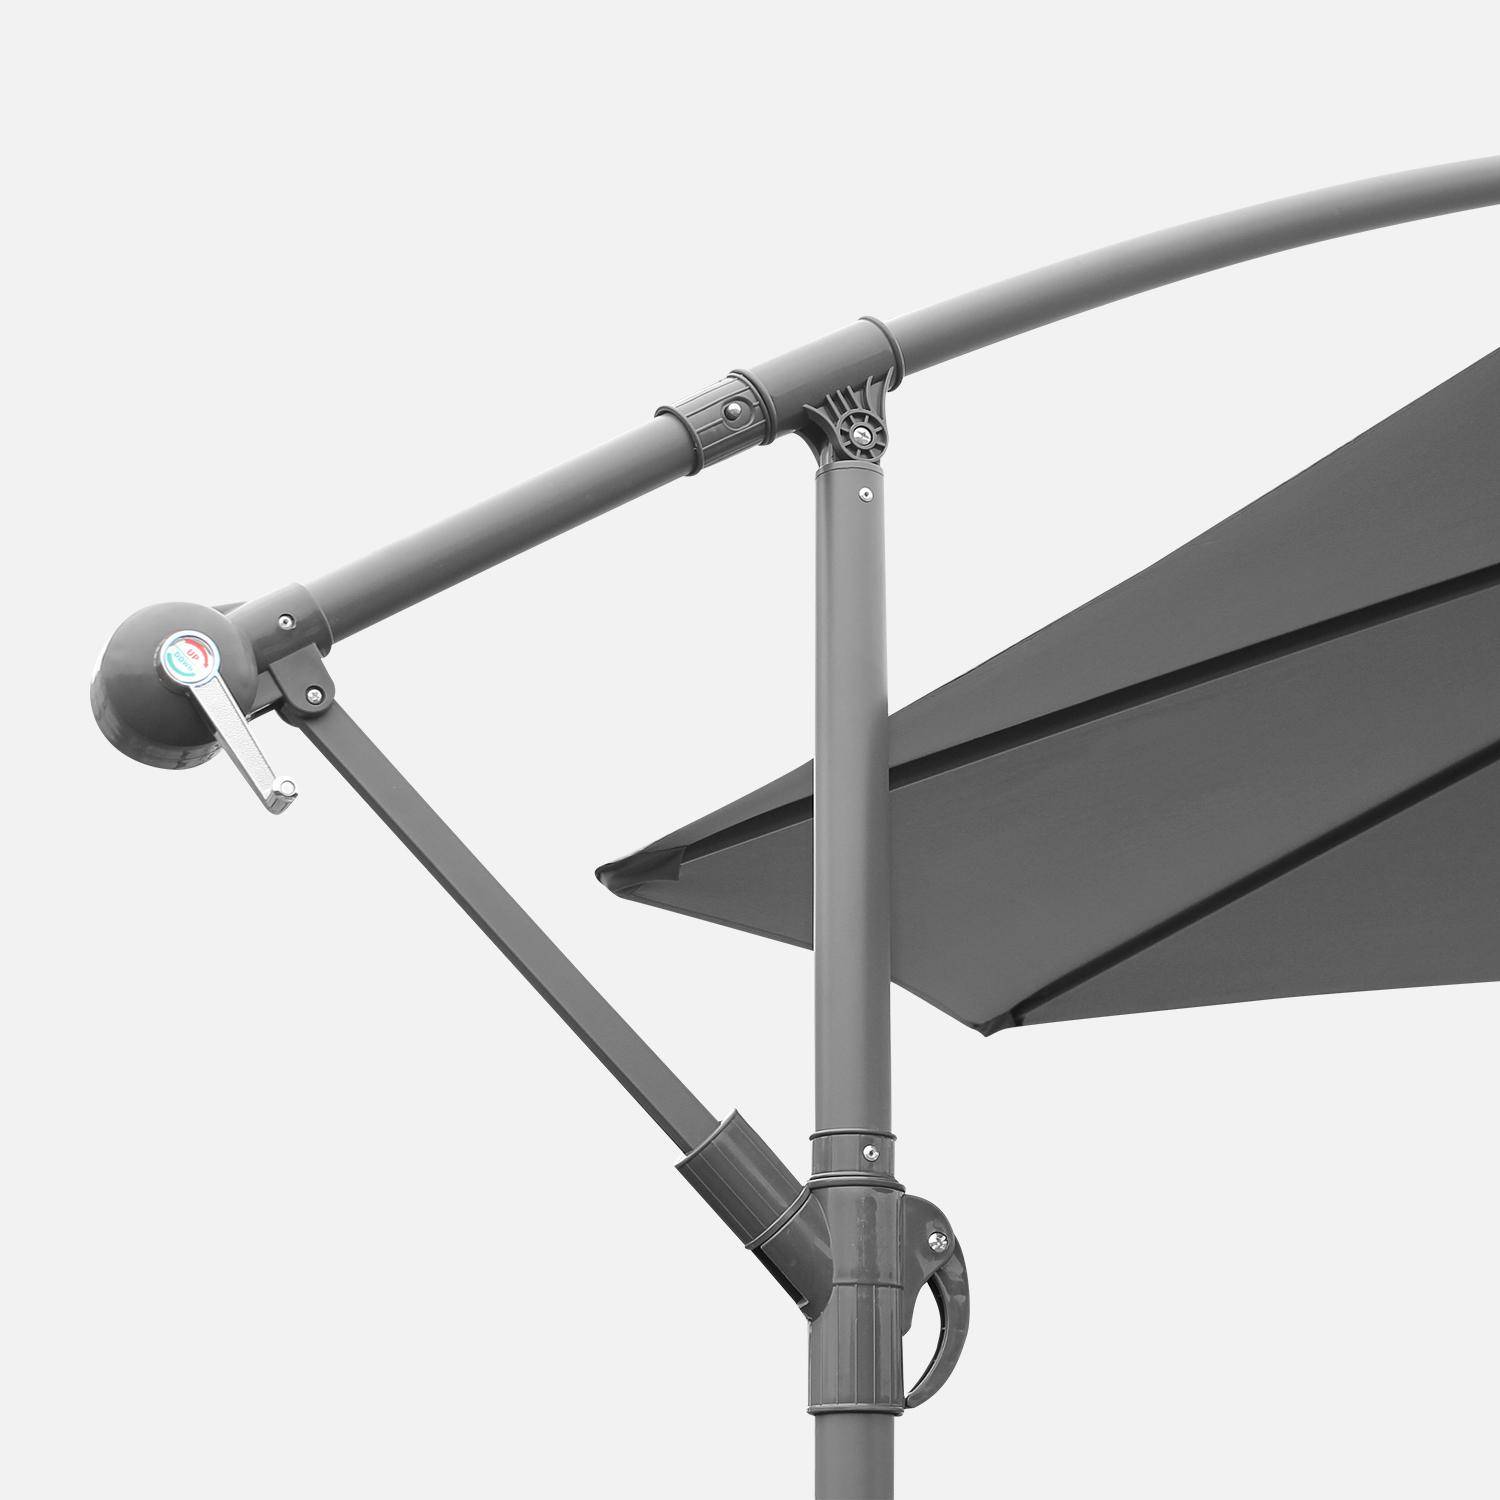 Ombrellone offset Ø350cm - Hardelot - Colore grigio, struttura antracite, manovella a scomparsa. Photo4